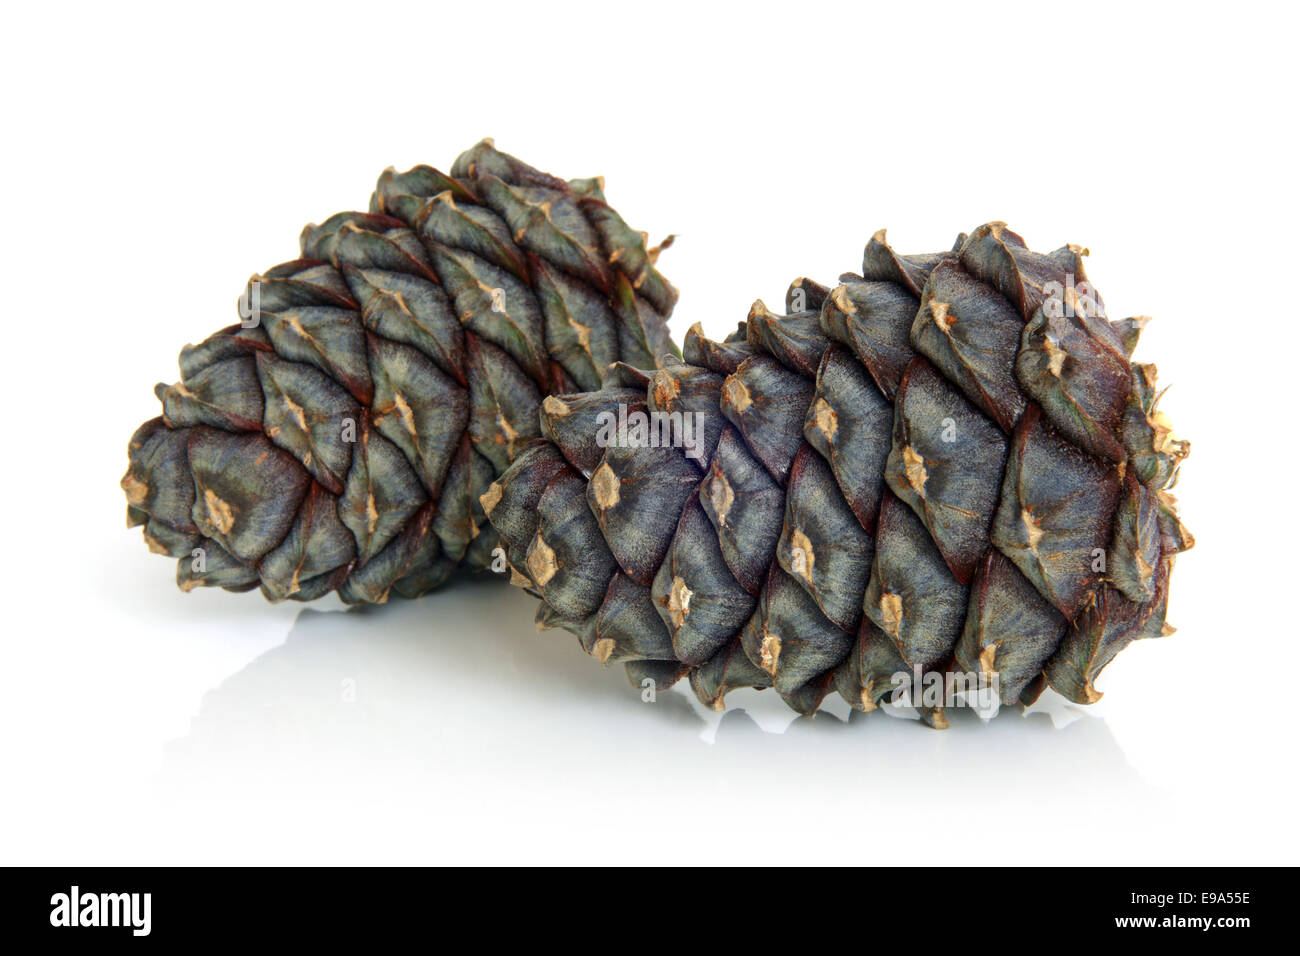 Siberian pine cones Stock Photo